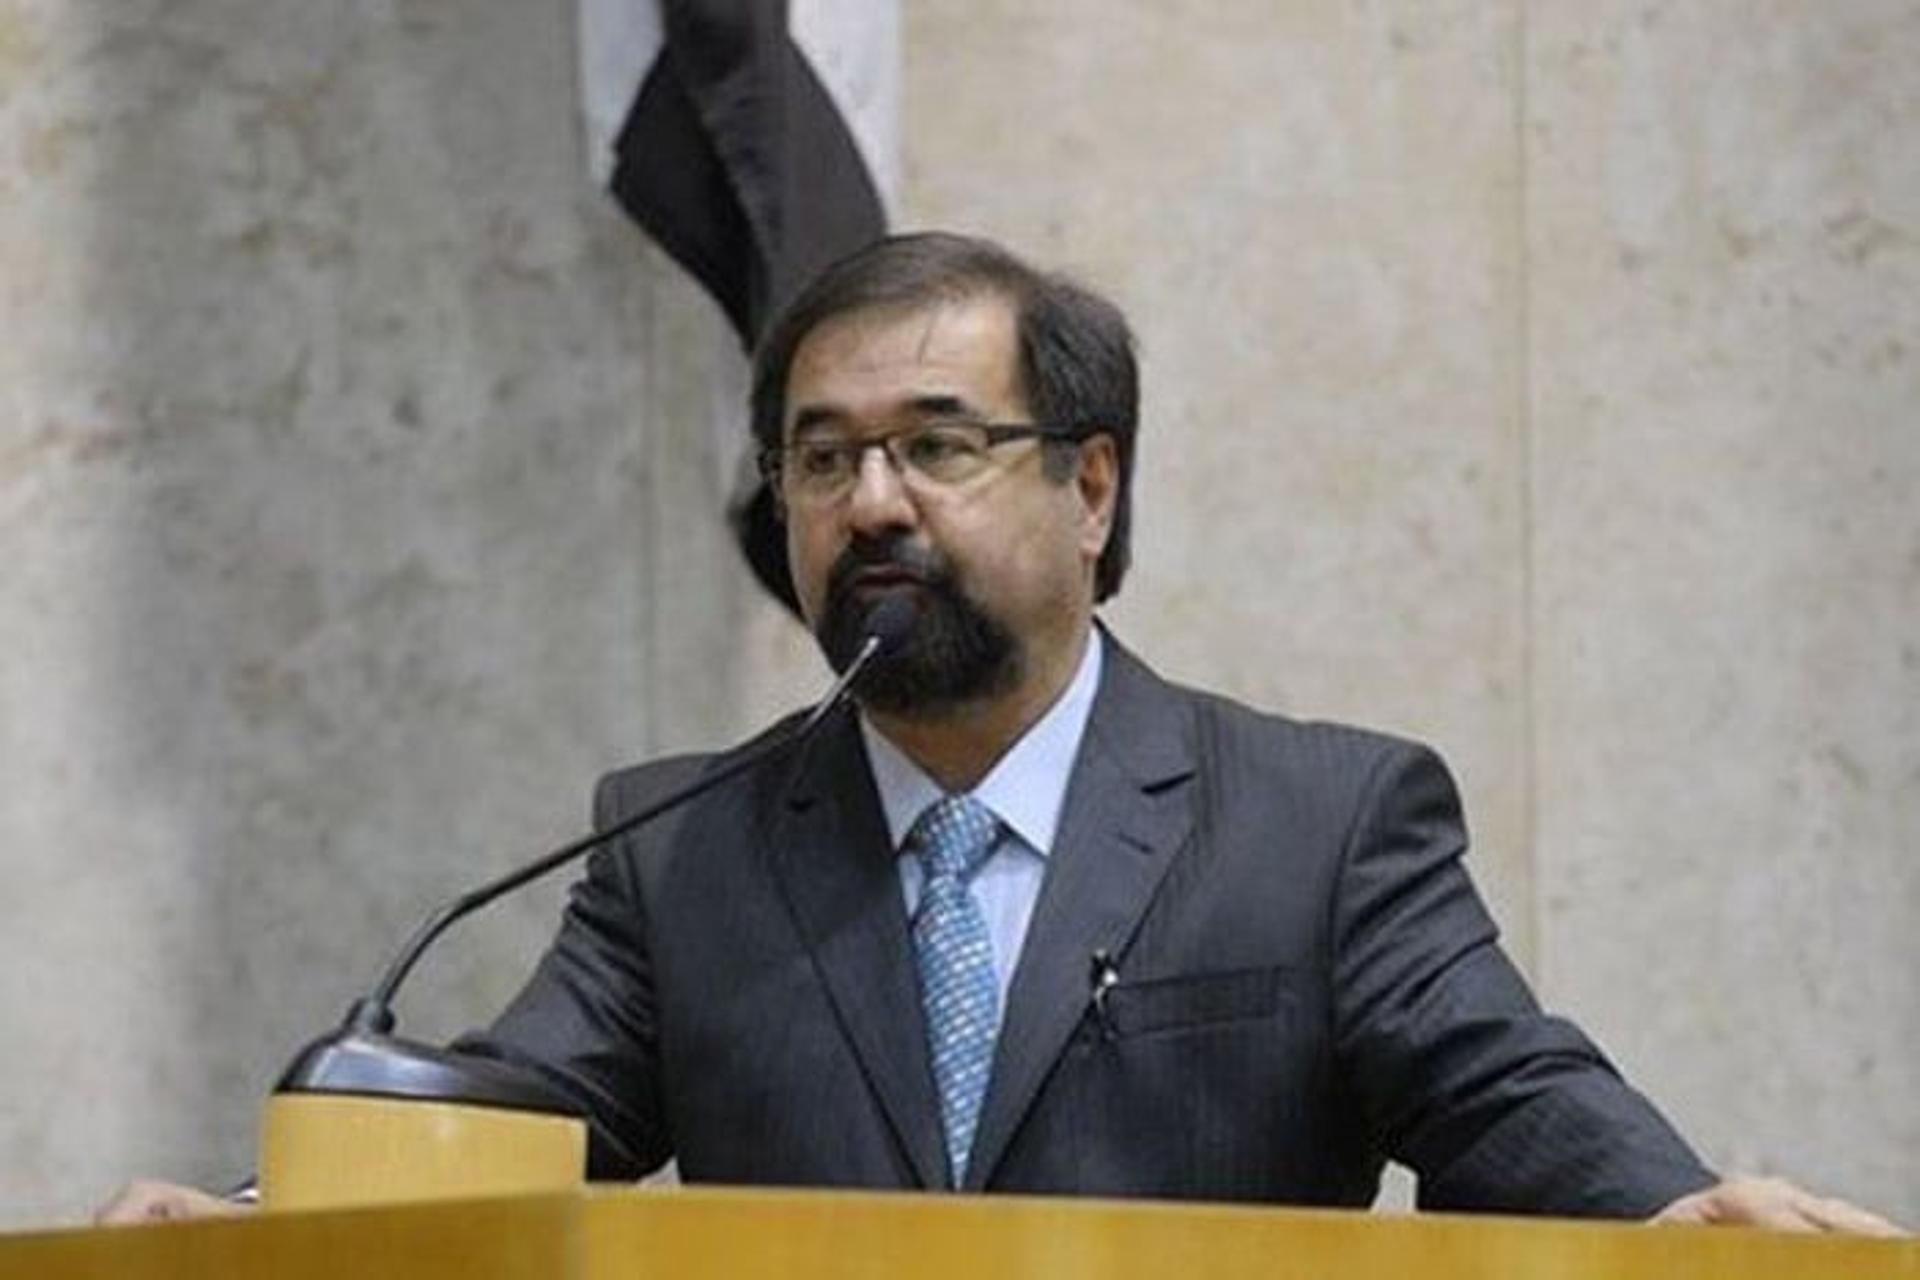 Marco Aurélio Cunha (ex-superintendente do São Paulo) - vereador em 2012